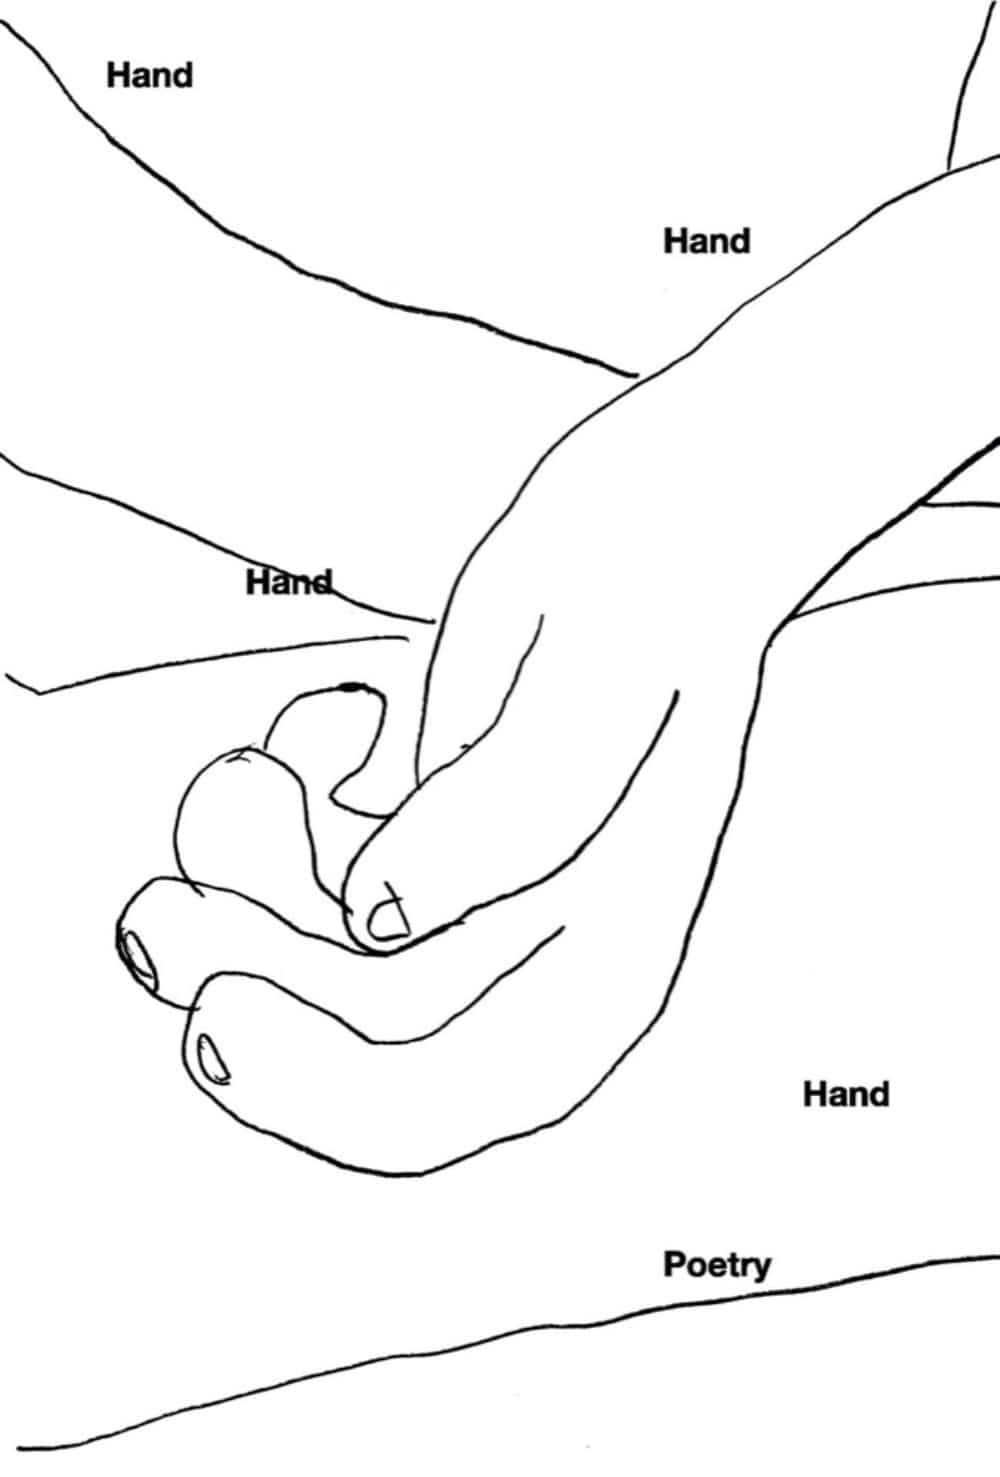 [6차 입고] Hand, Hand, Hand, Hand, Poetry · NOWWE